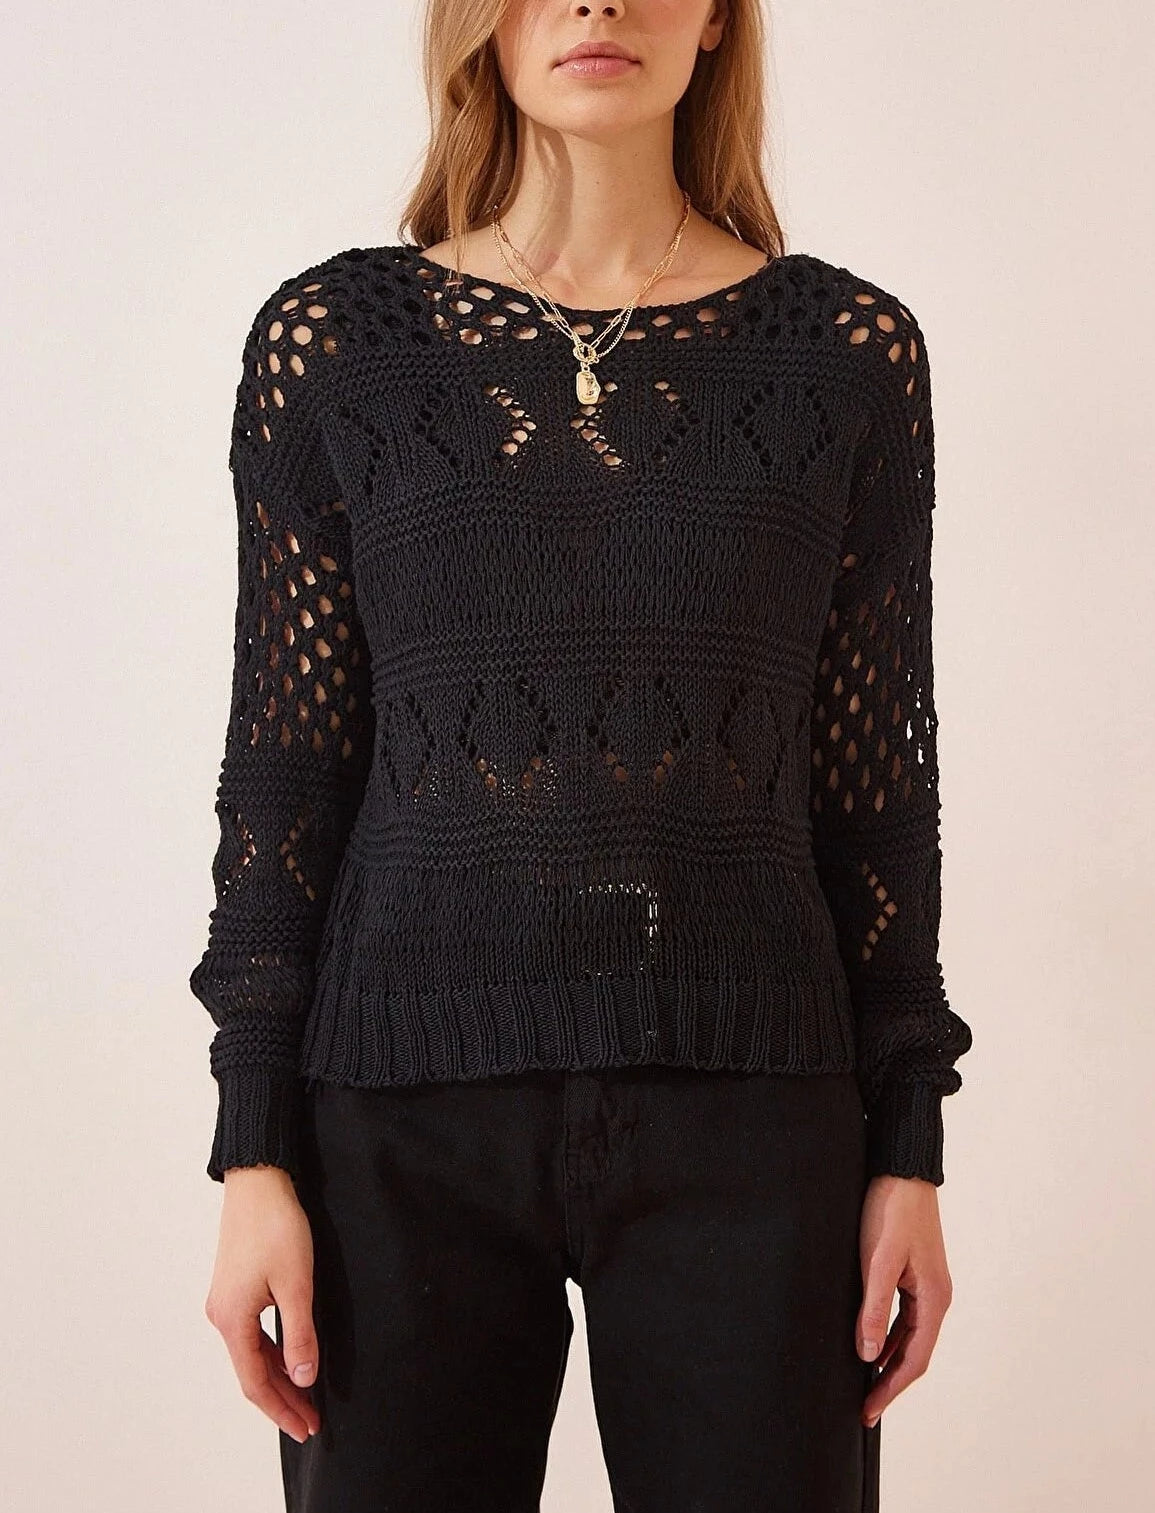 Crochet Black Pullover